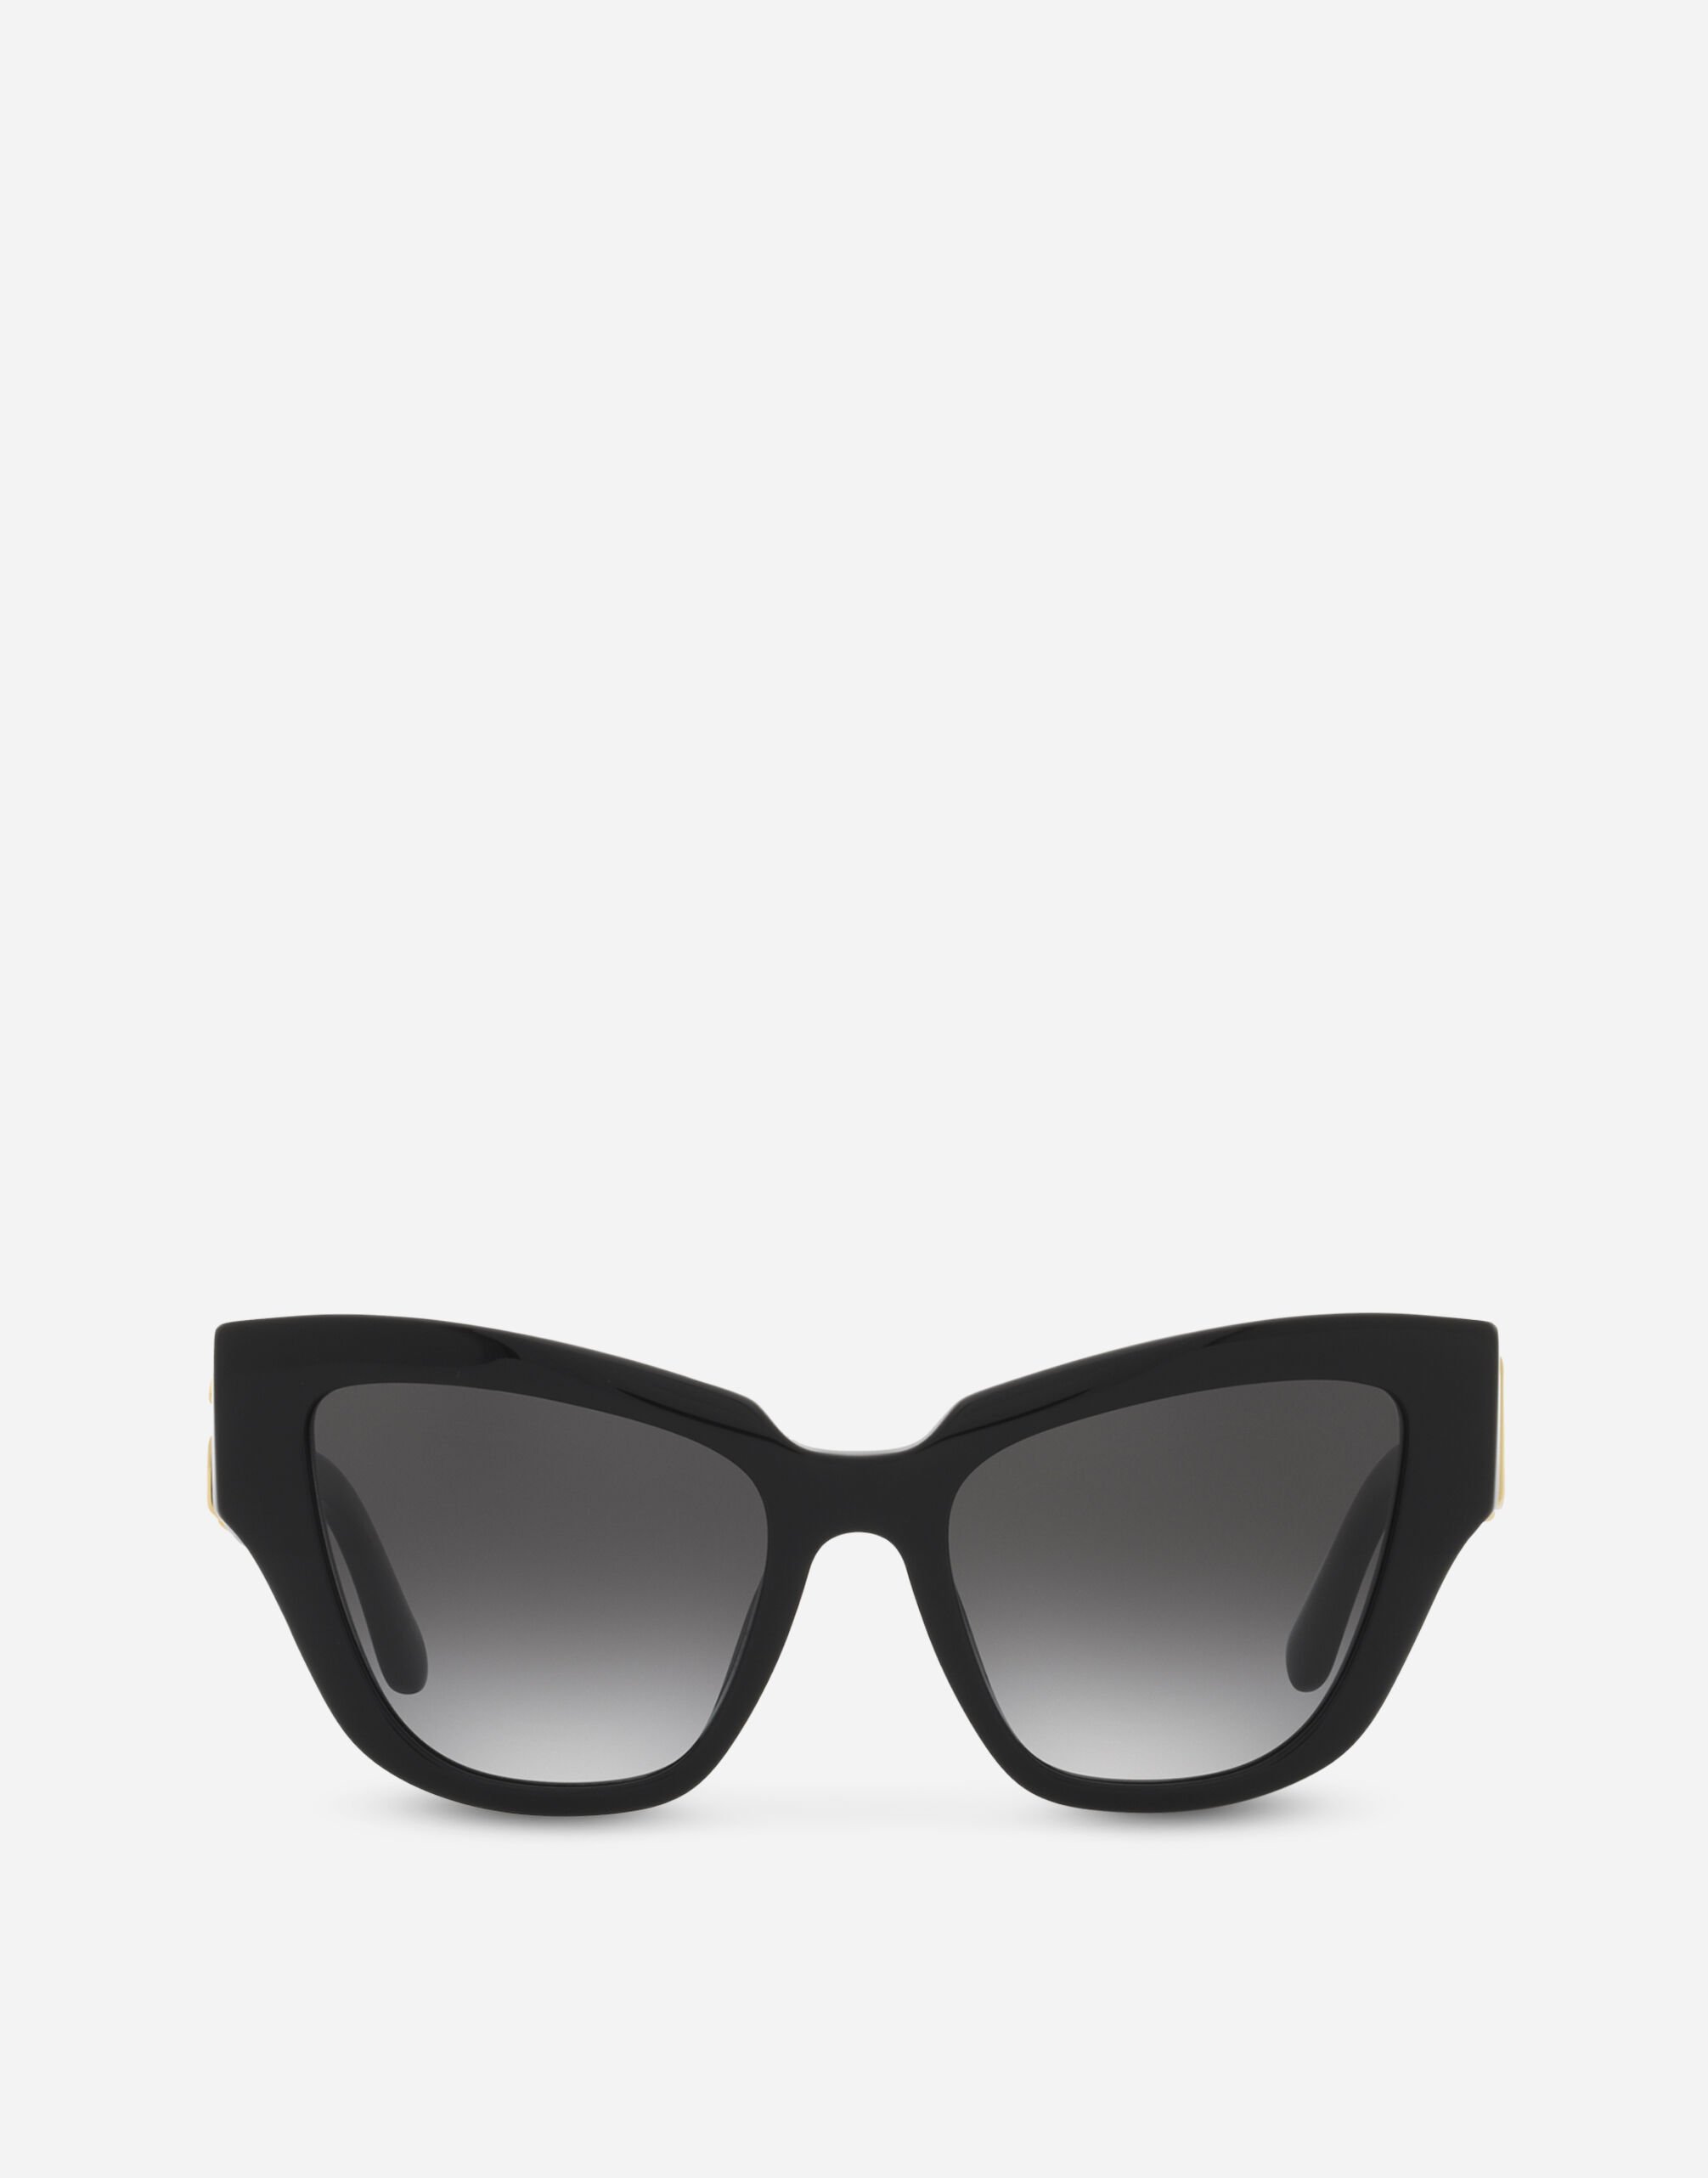 Dolce & Gabbana DG crossed sunglasses Black VG4439VP187